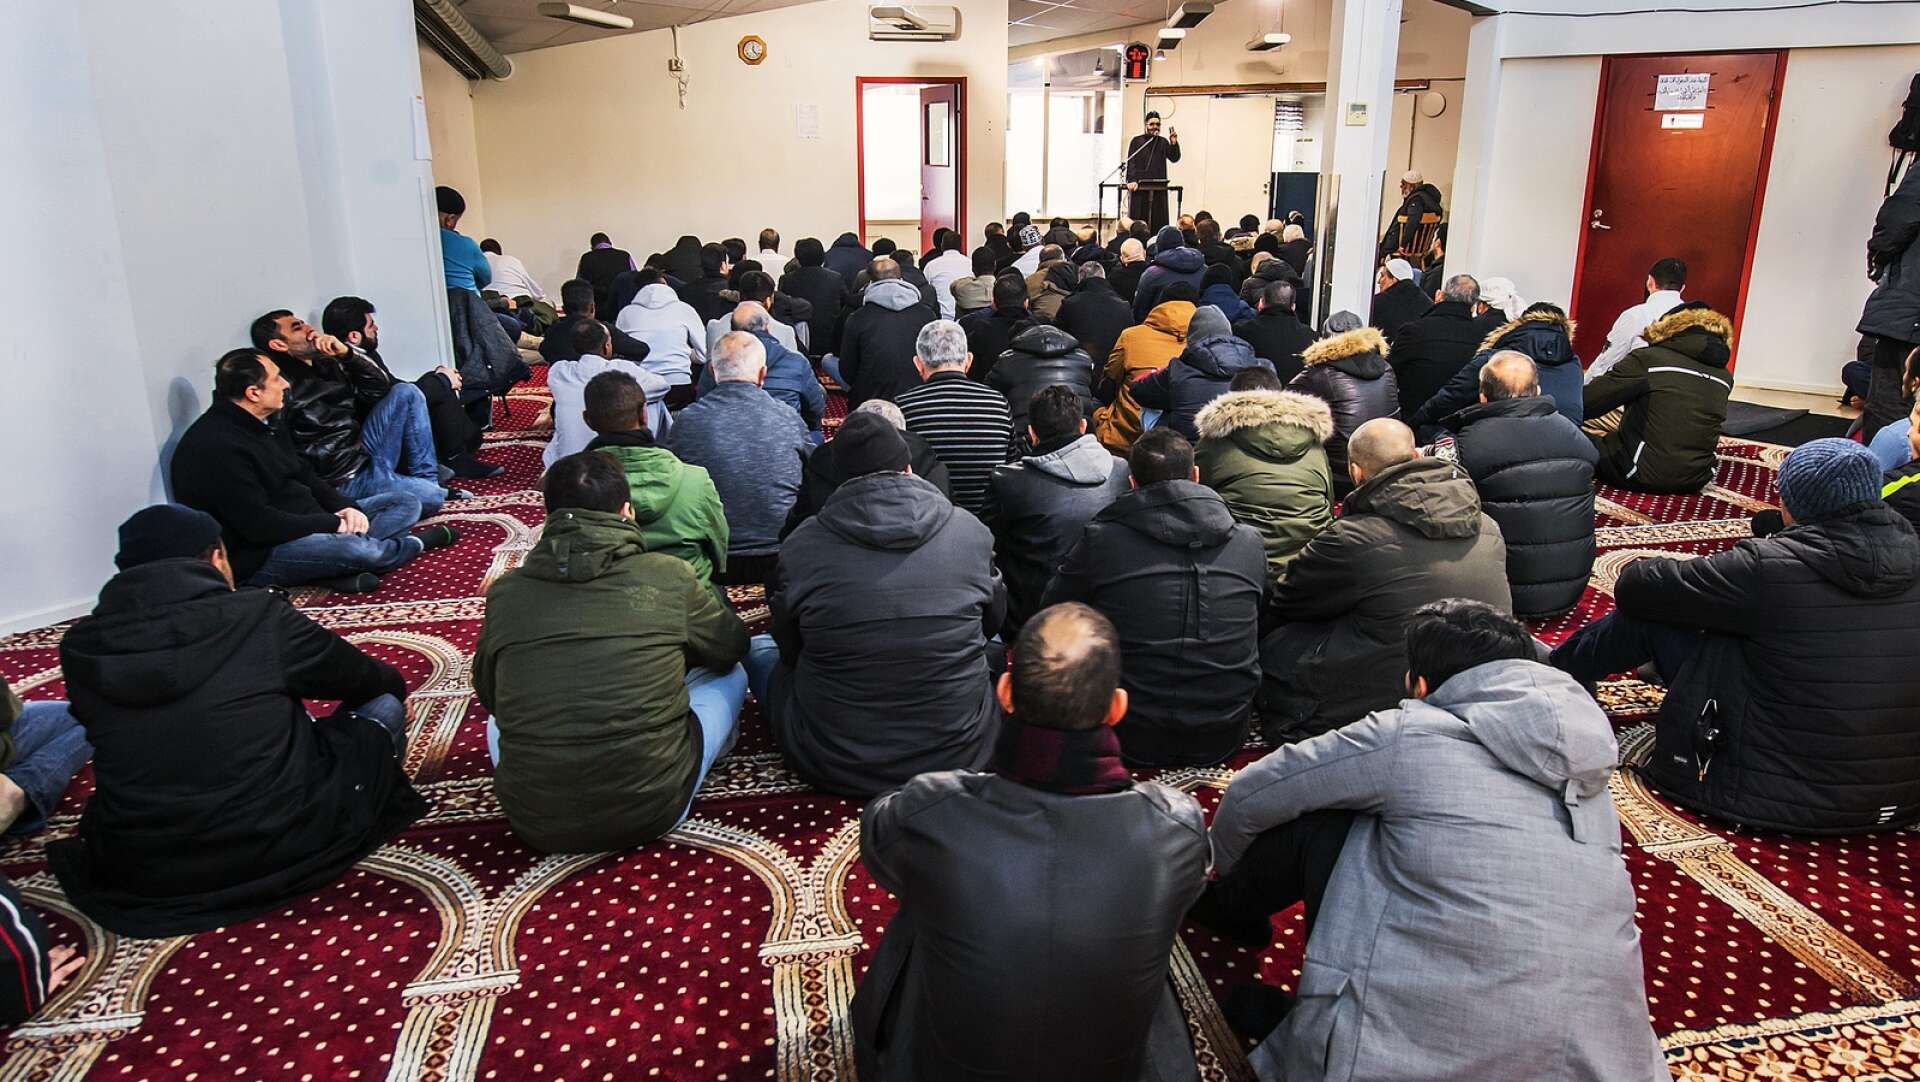 Islamiska kulturföreningen är väl förberedda för Rasmus Paludans demonstration i Karlstad och har planerat för flera alternativa aktiviteter. (Arkivbild.)